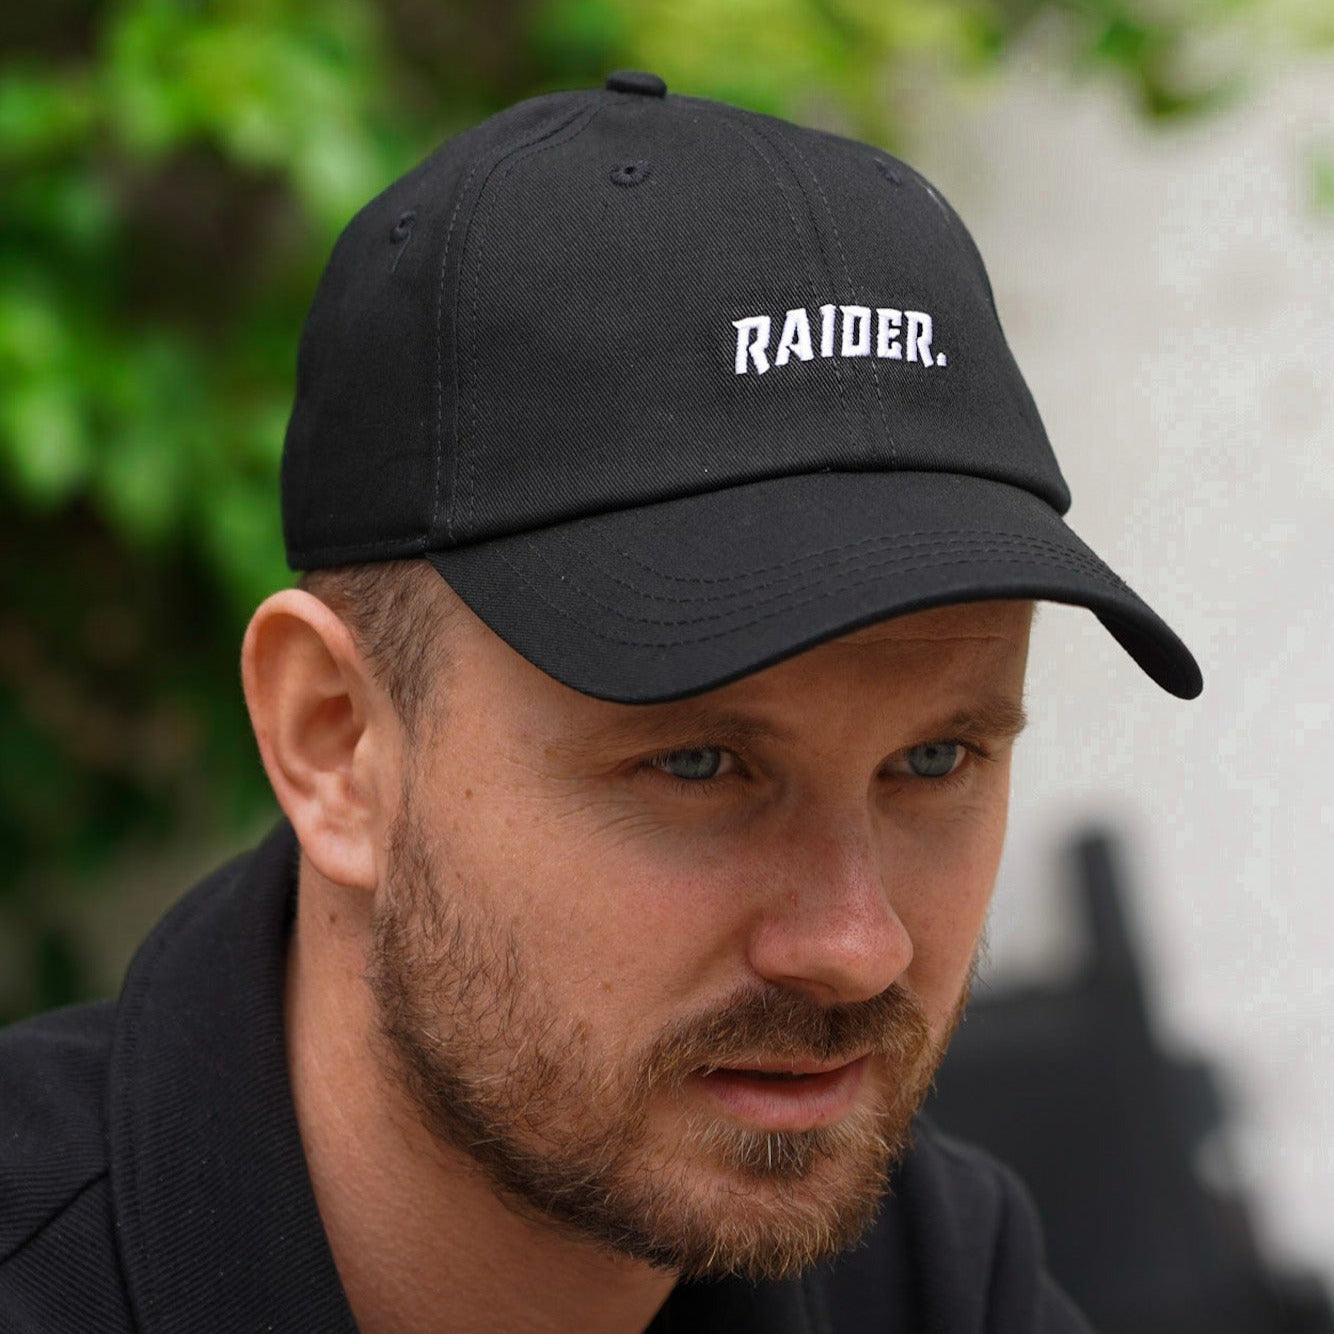 NL Raider Dad cap - Black/white